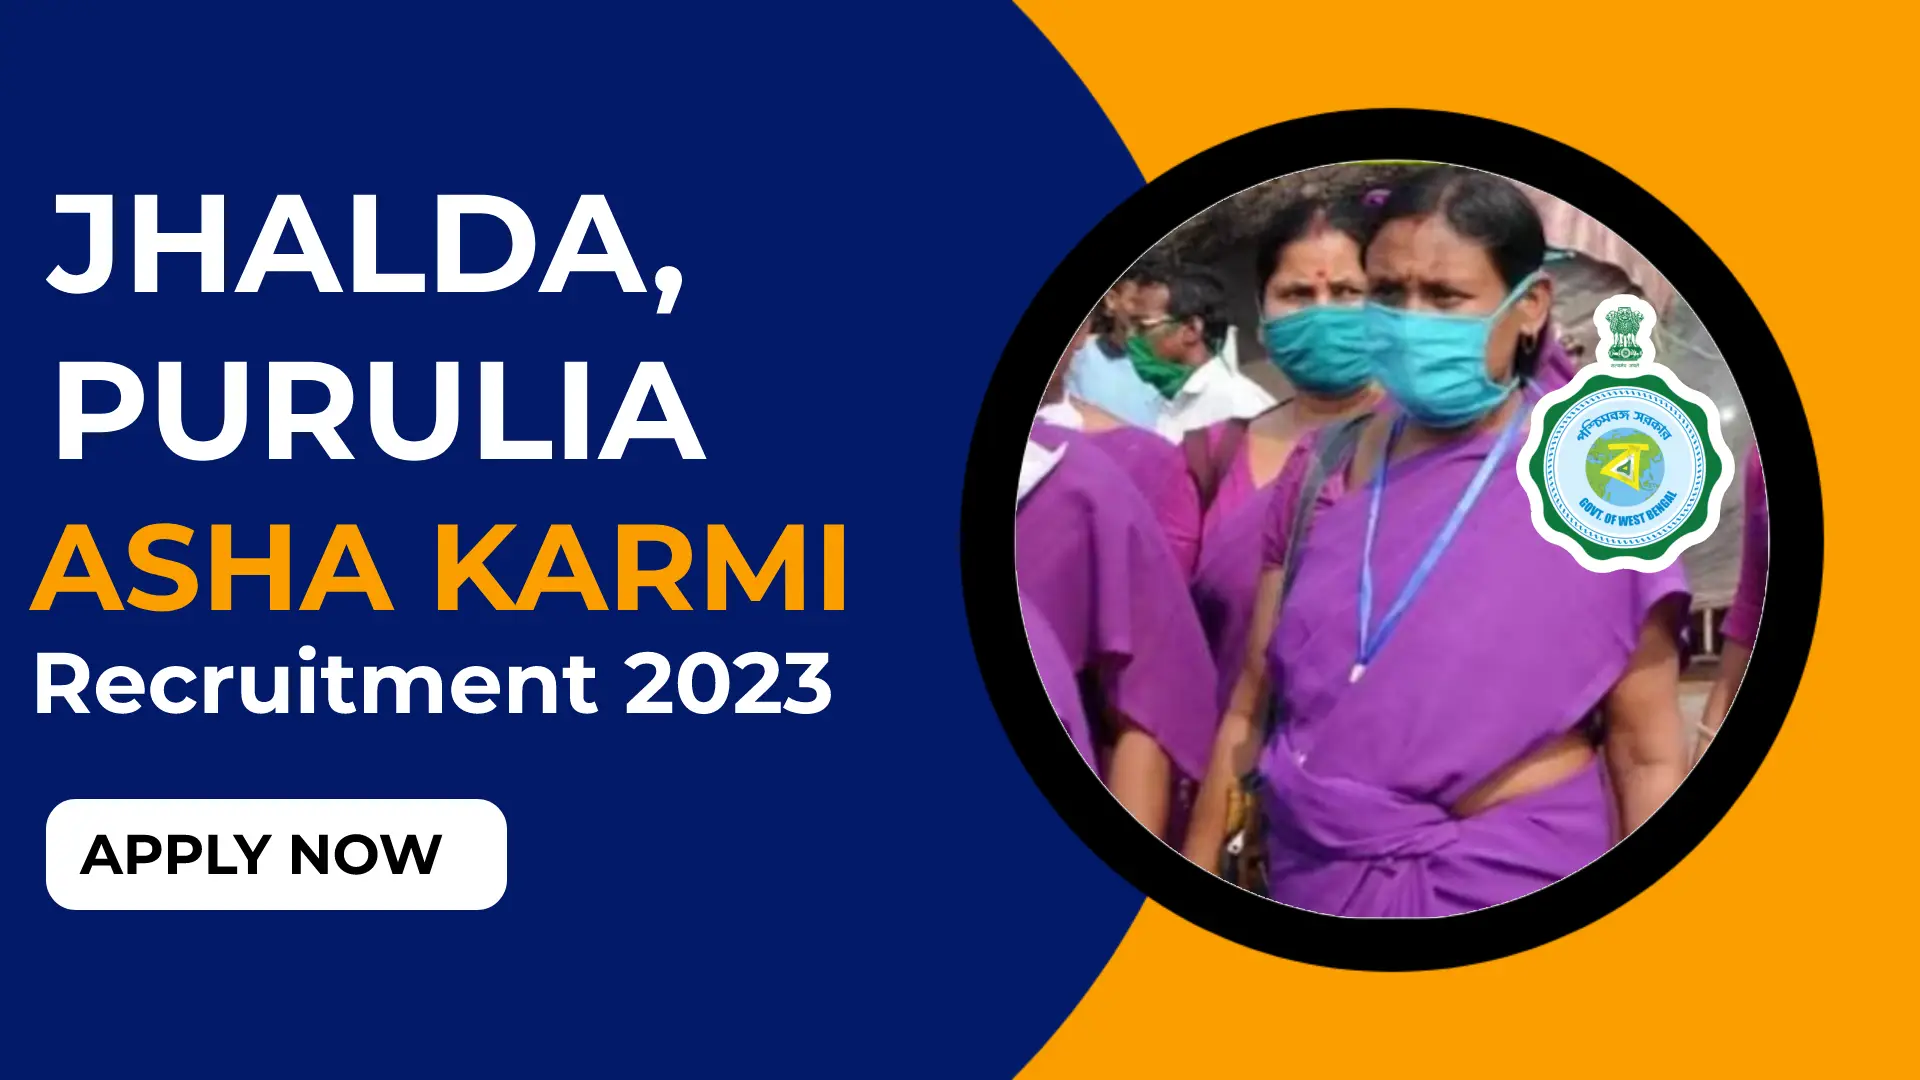 Purulia Asha Karmi Recruitment 2023